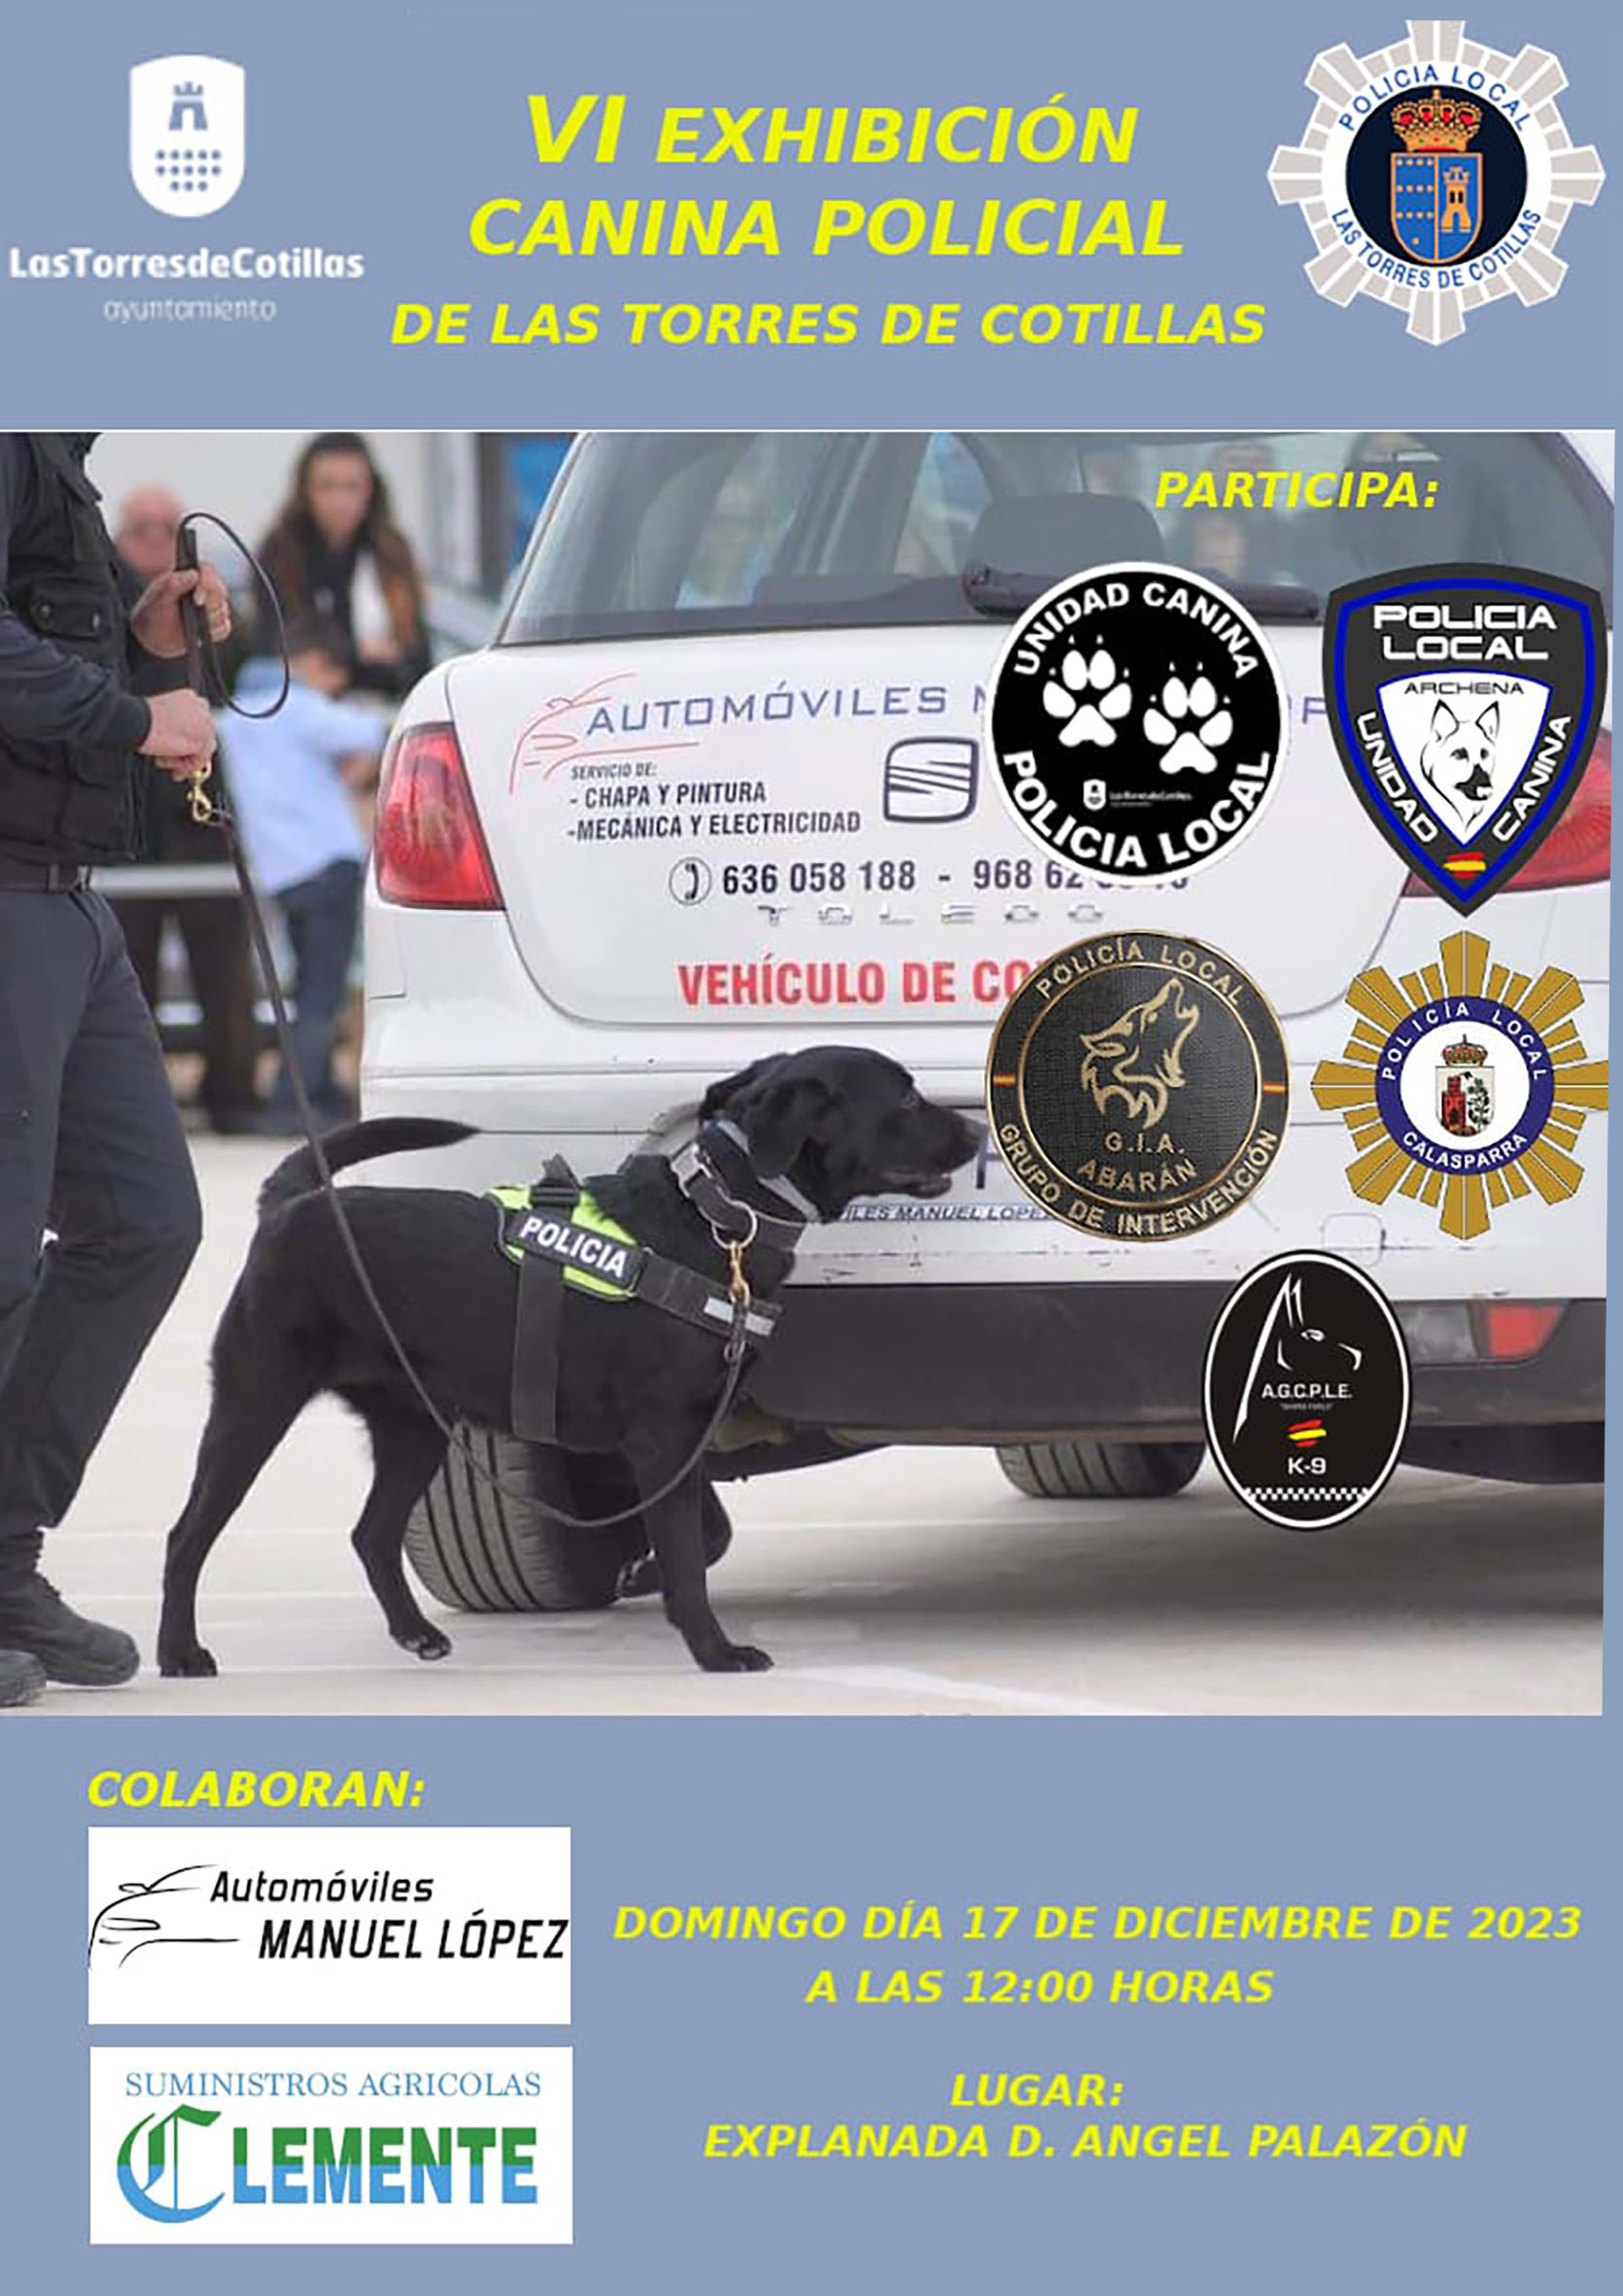 exhibición canina policial de Las Torres de Cotillas